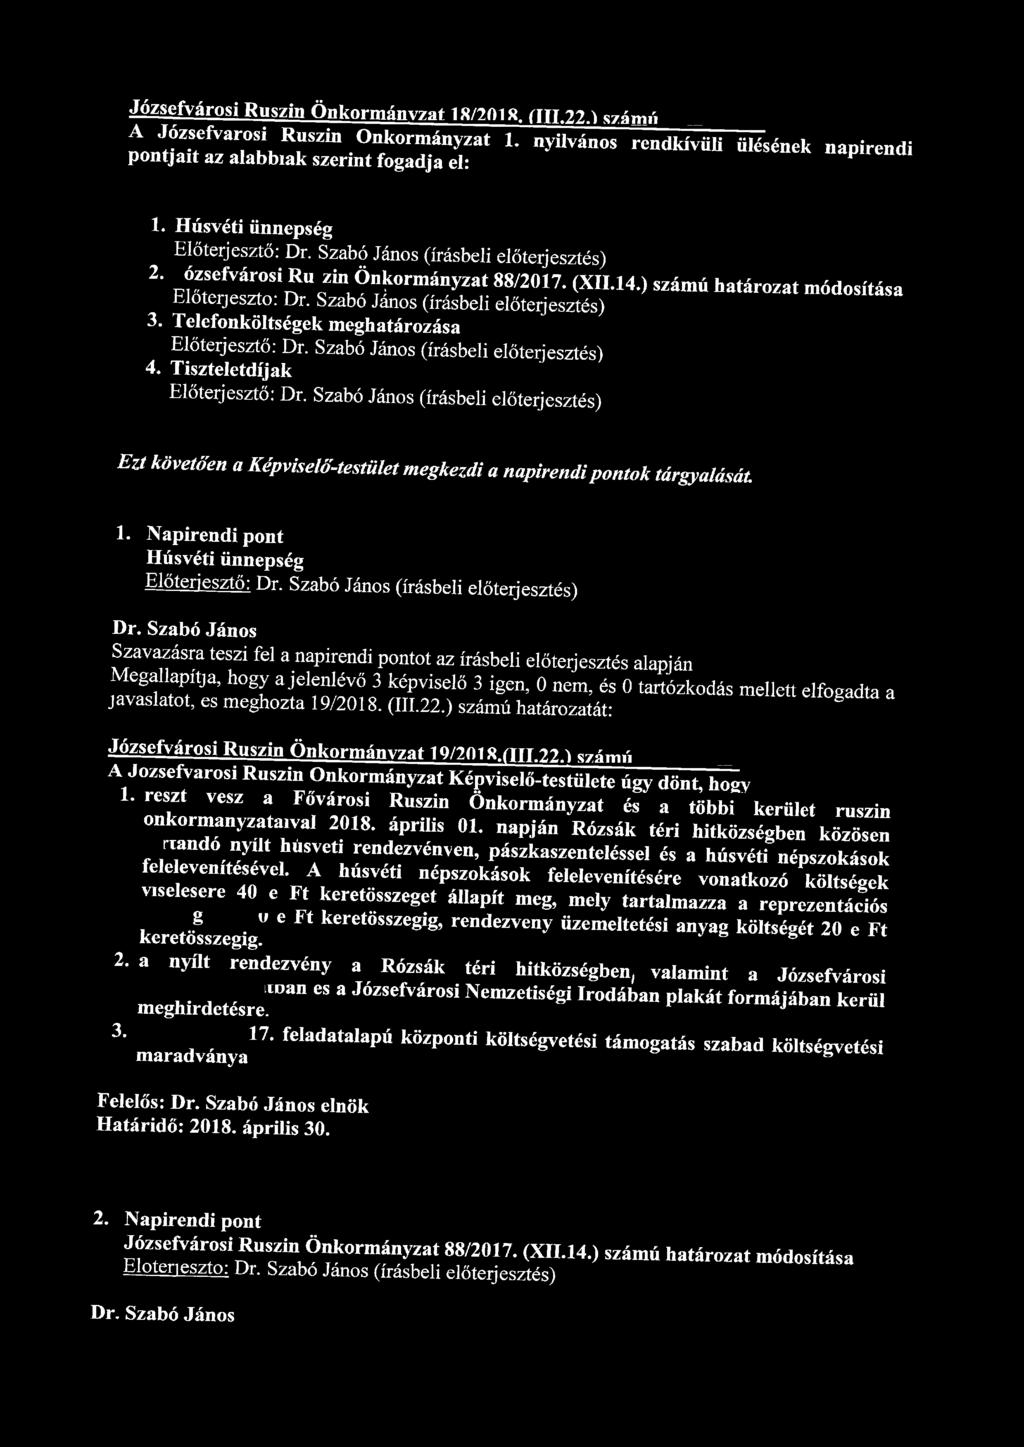 Józsefvárosi Ruszin Önkormányzat 18/2018 ÍÍU.22.1 számú Itf Fvar i l R 1 uszin Önkormányzat 1. nyilvános rendkívüli ülésének napirendi p pontjait az alabbiak szerint fogadja el: 1.